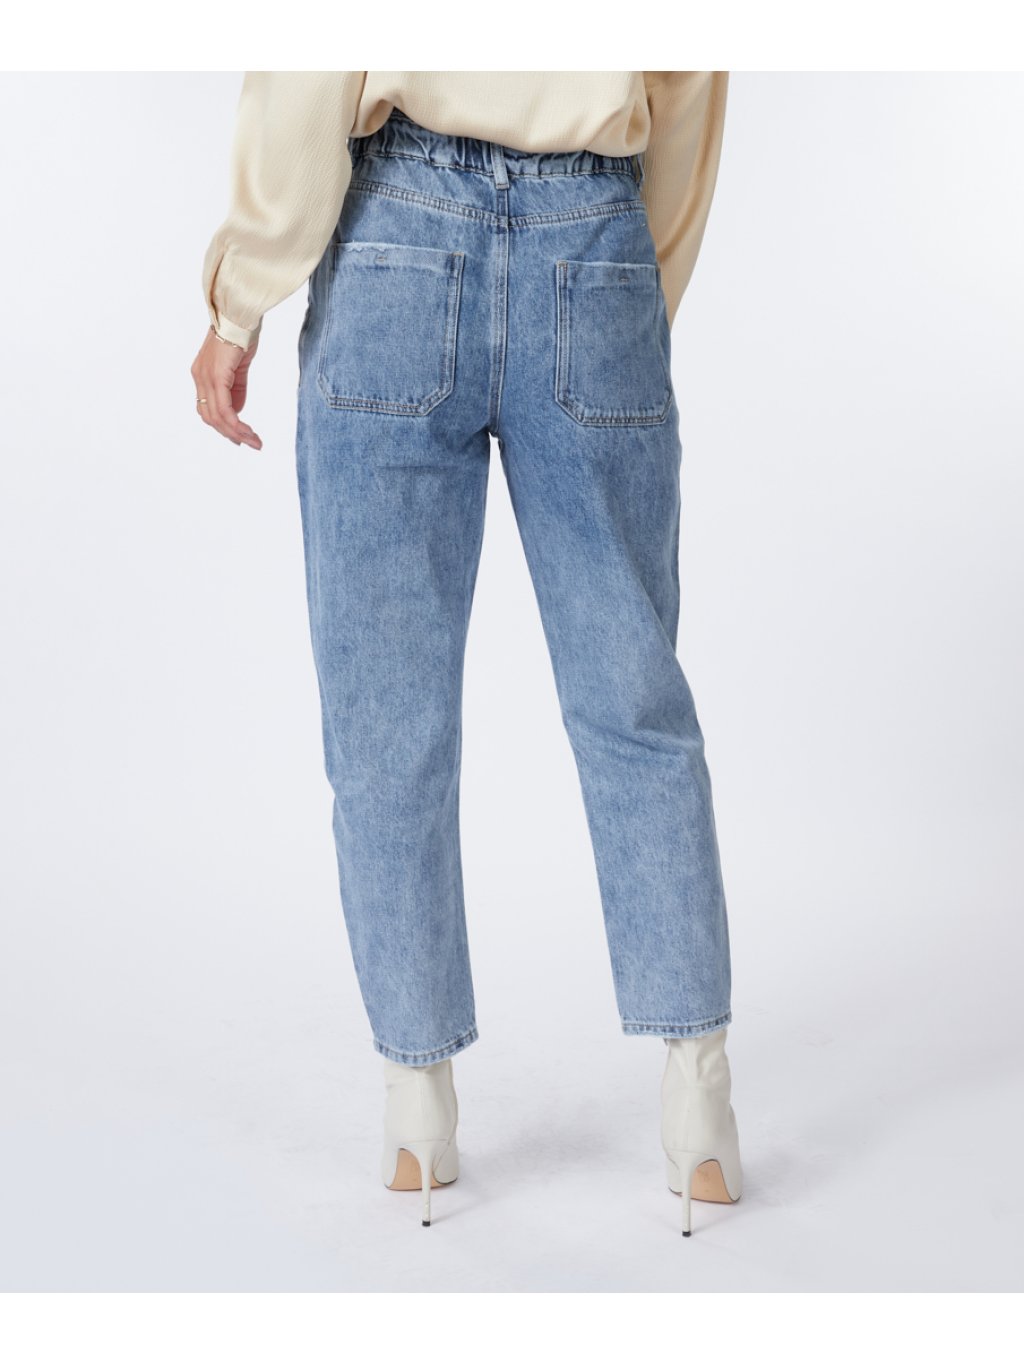 Kalhoty Esqualo 12506 středně modré džíny do pasu